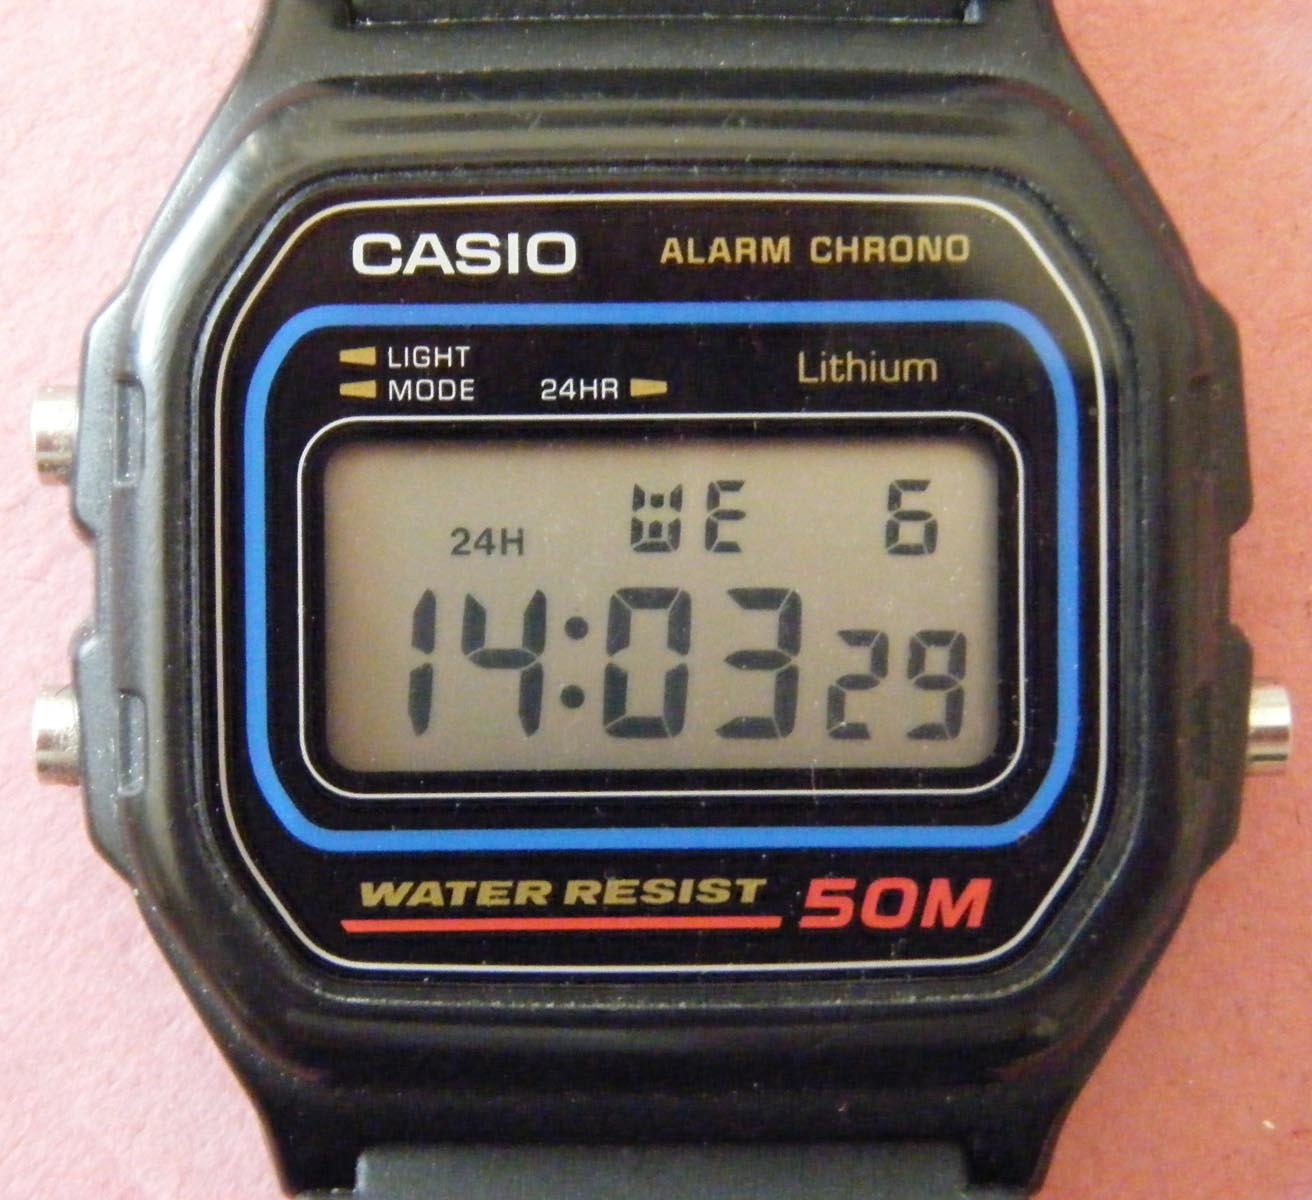 使用TN-LCD為顯示螢幕的手錶 (圖片取自維基百科，作者Ricce，公開授權)